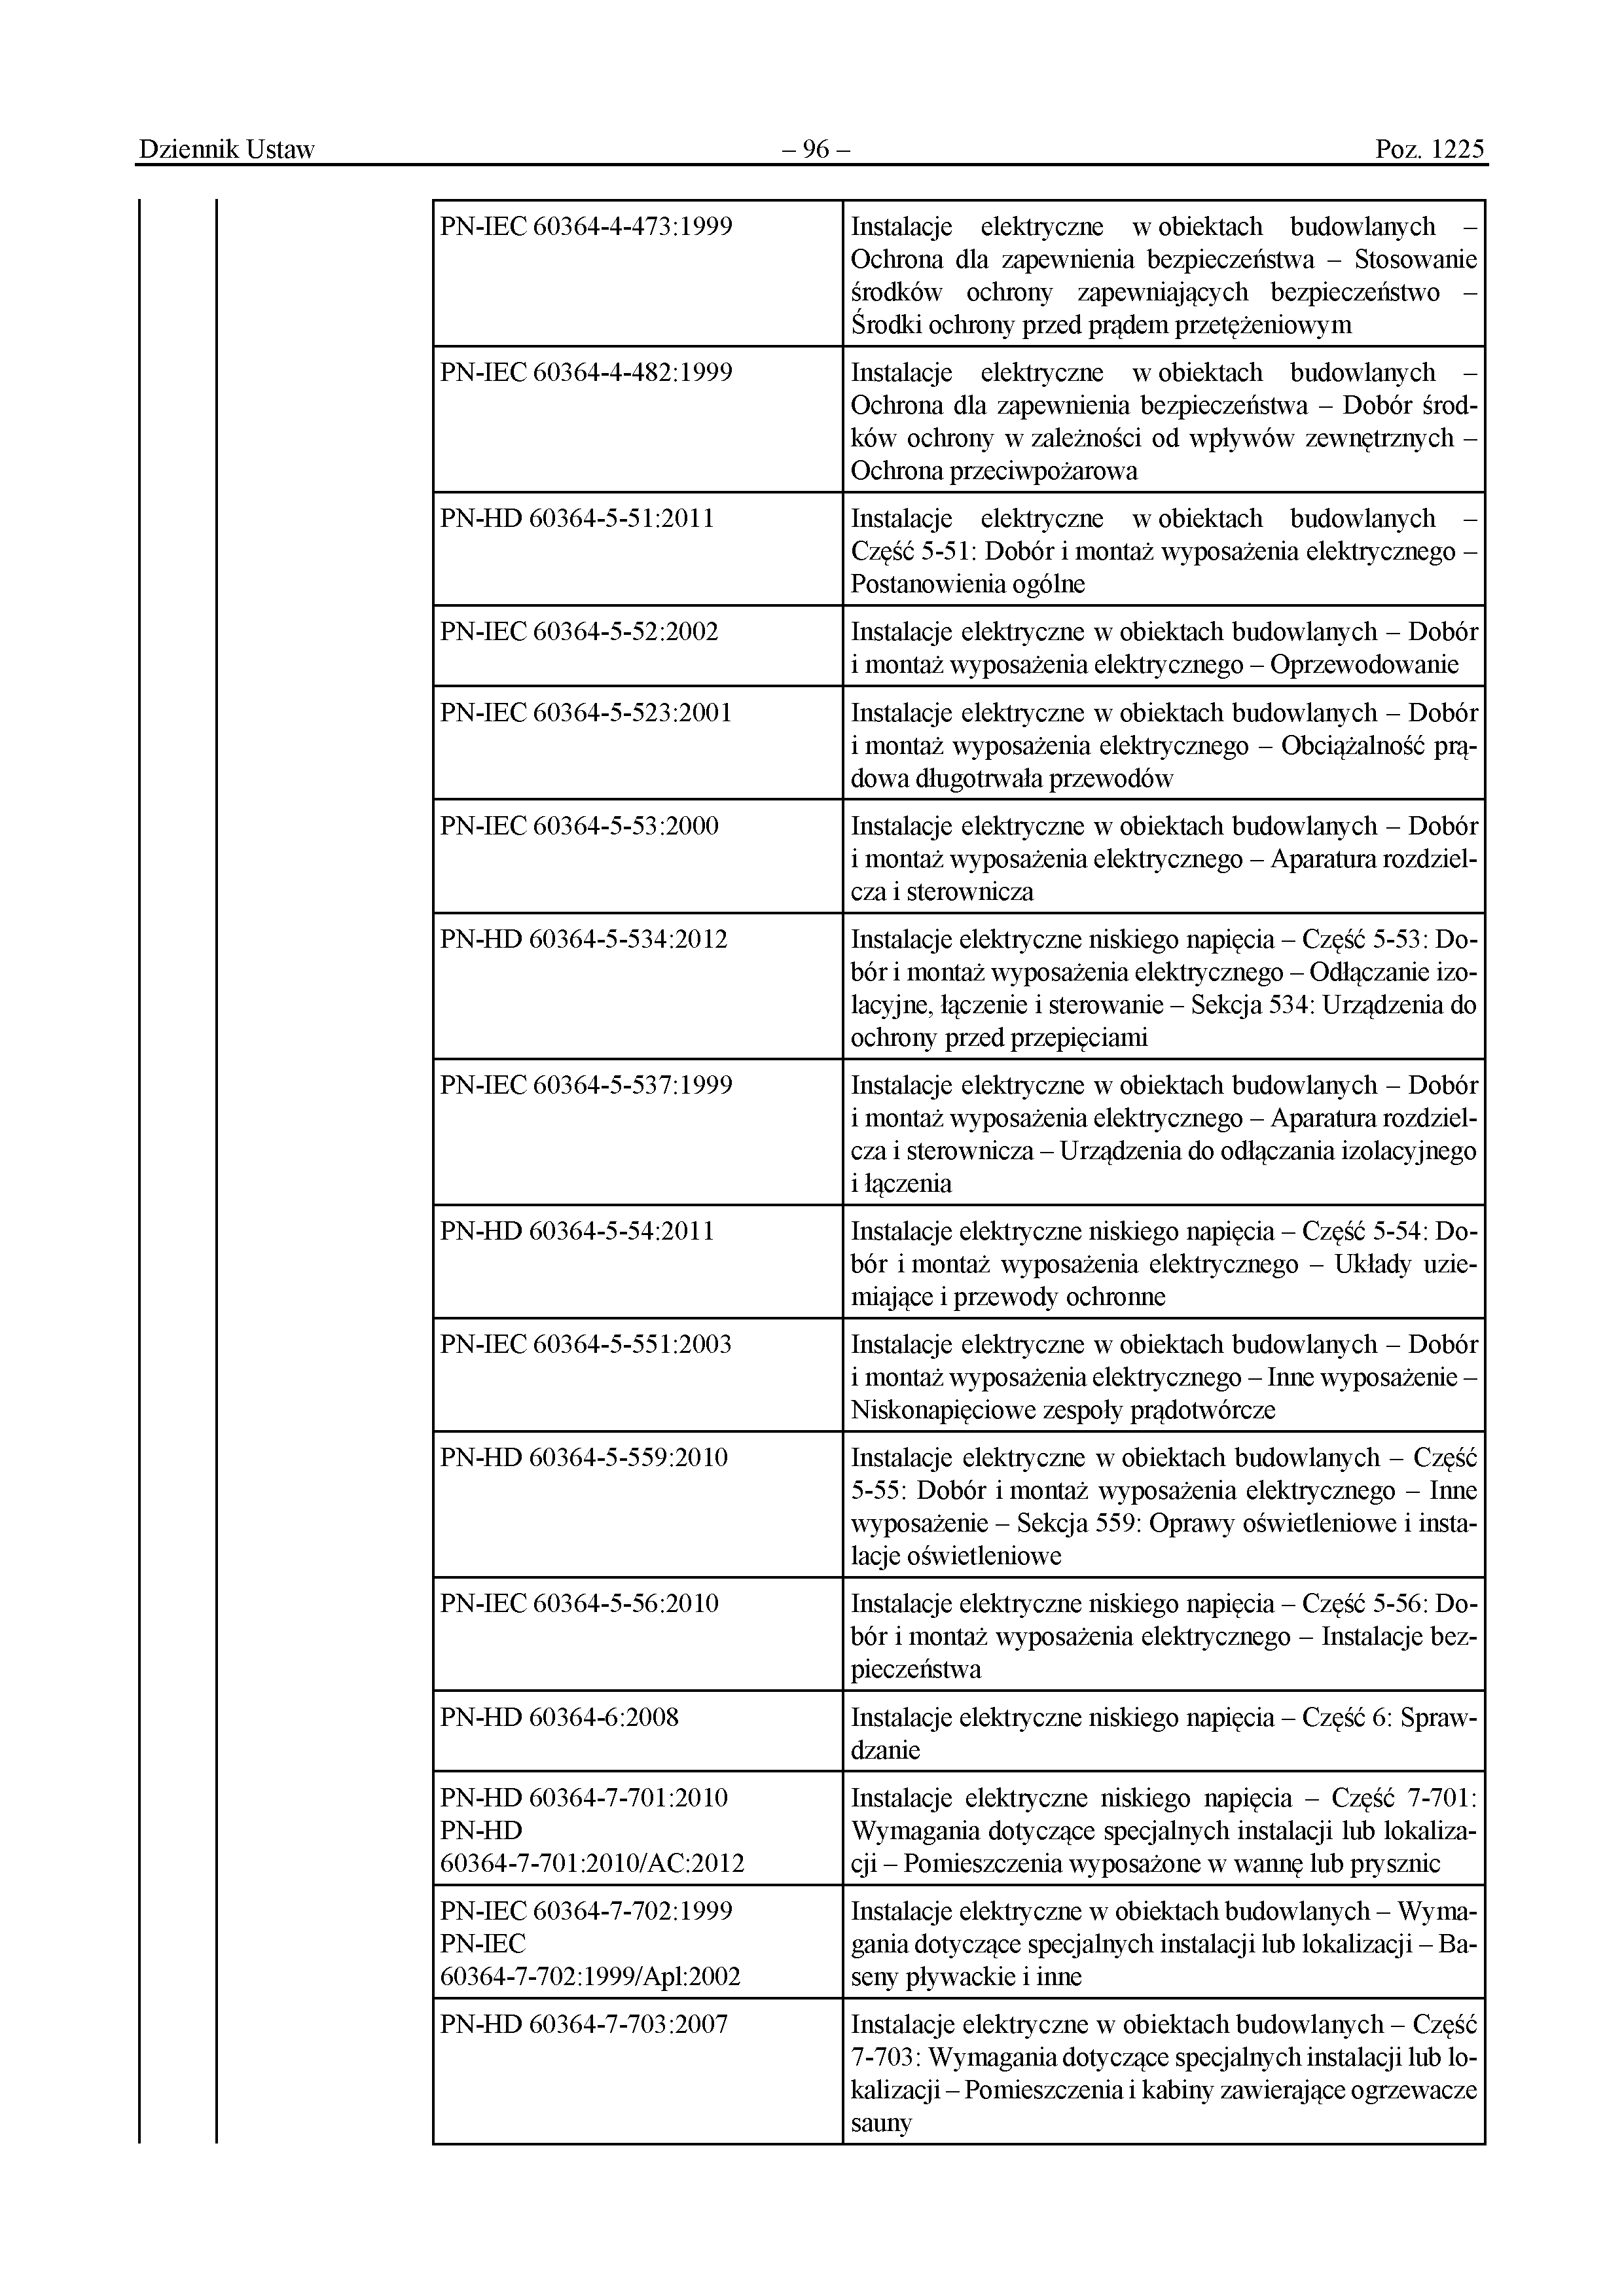 Wykaz polskich norm przywołanych w rozporządzeniu (s.7/13) - Załącznik do rozporządzenia Ministra Rozwoju i Technologii z dnia 12 kwietnia 2002 r. 